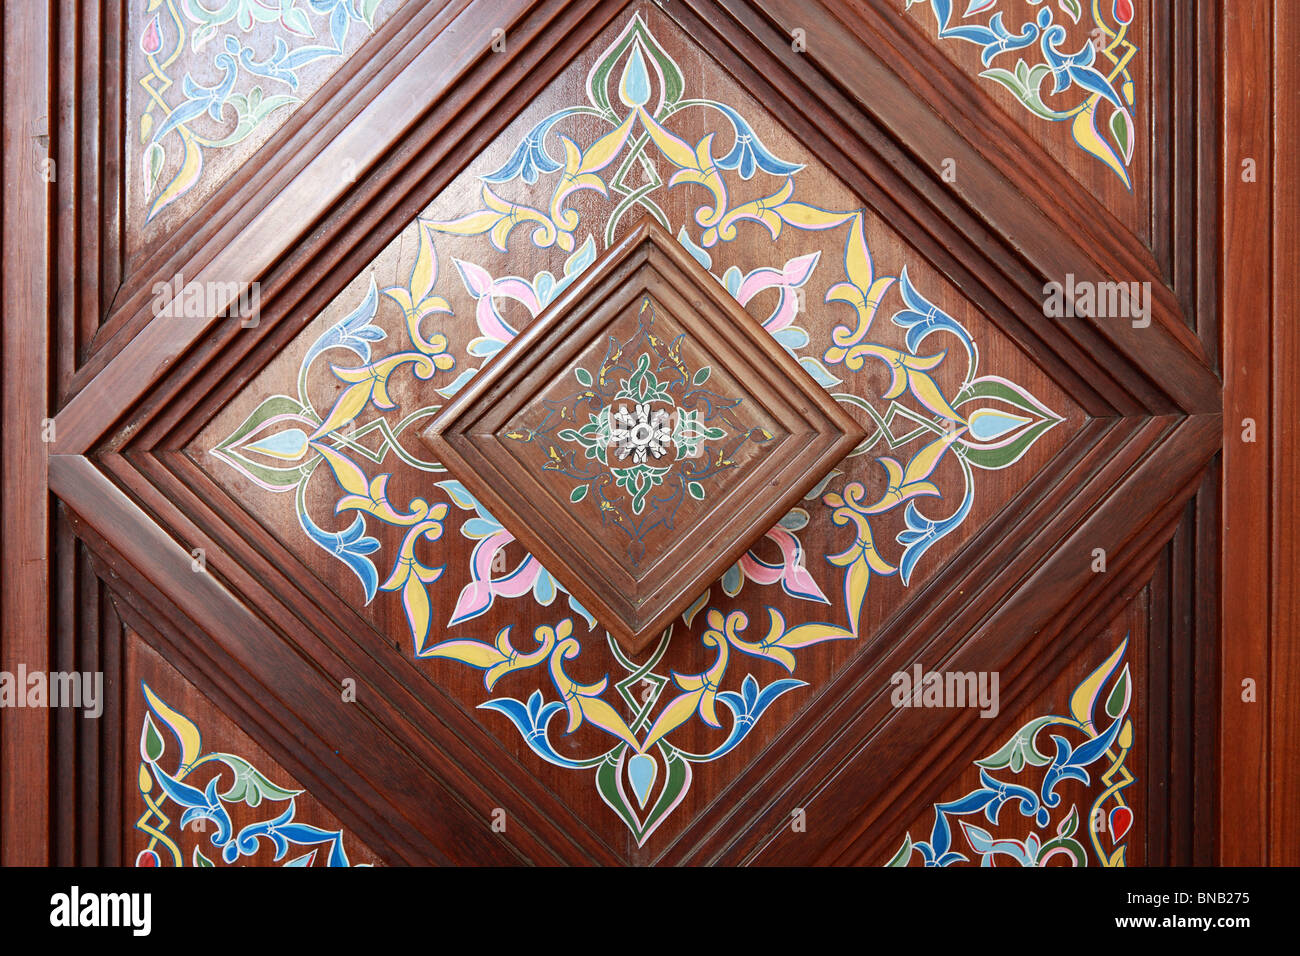 Decorated door in mosque Stock Photo